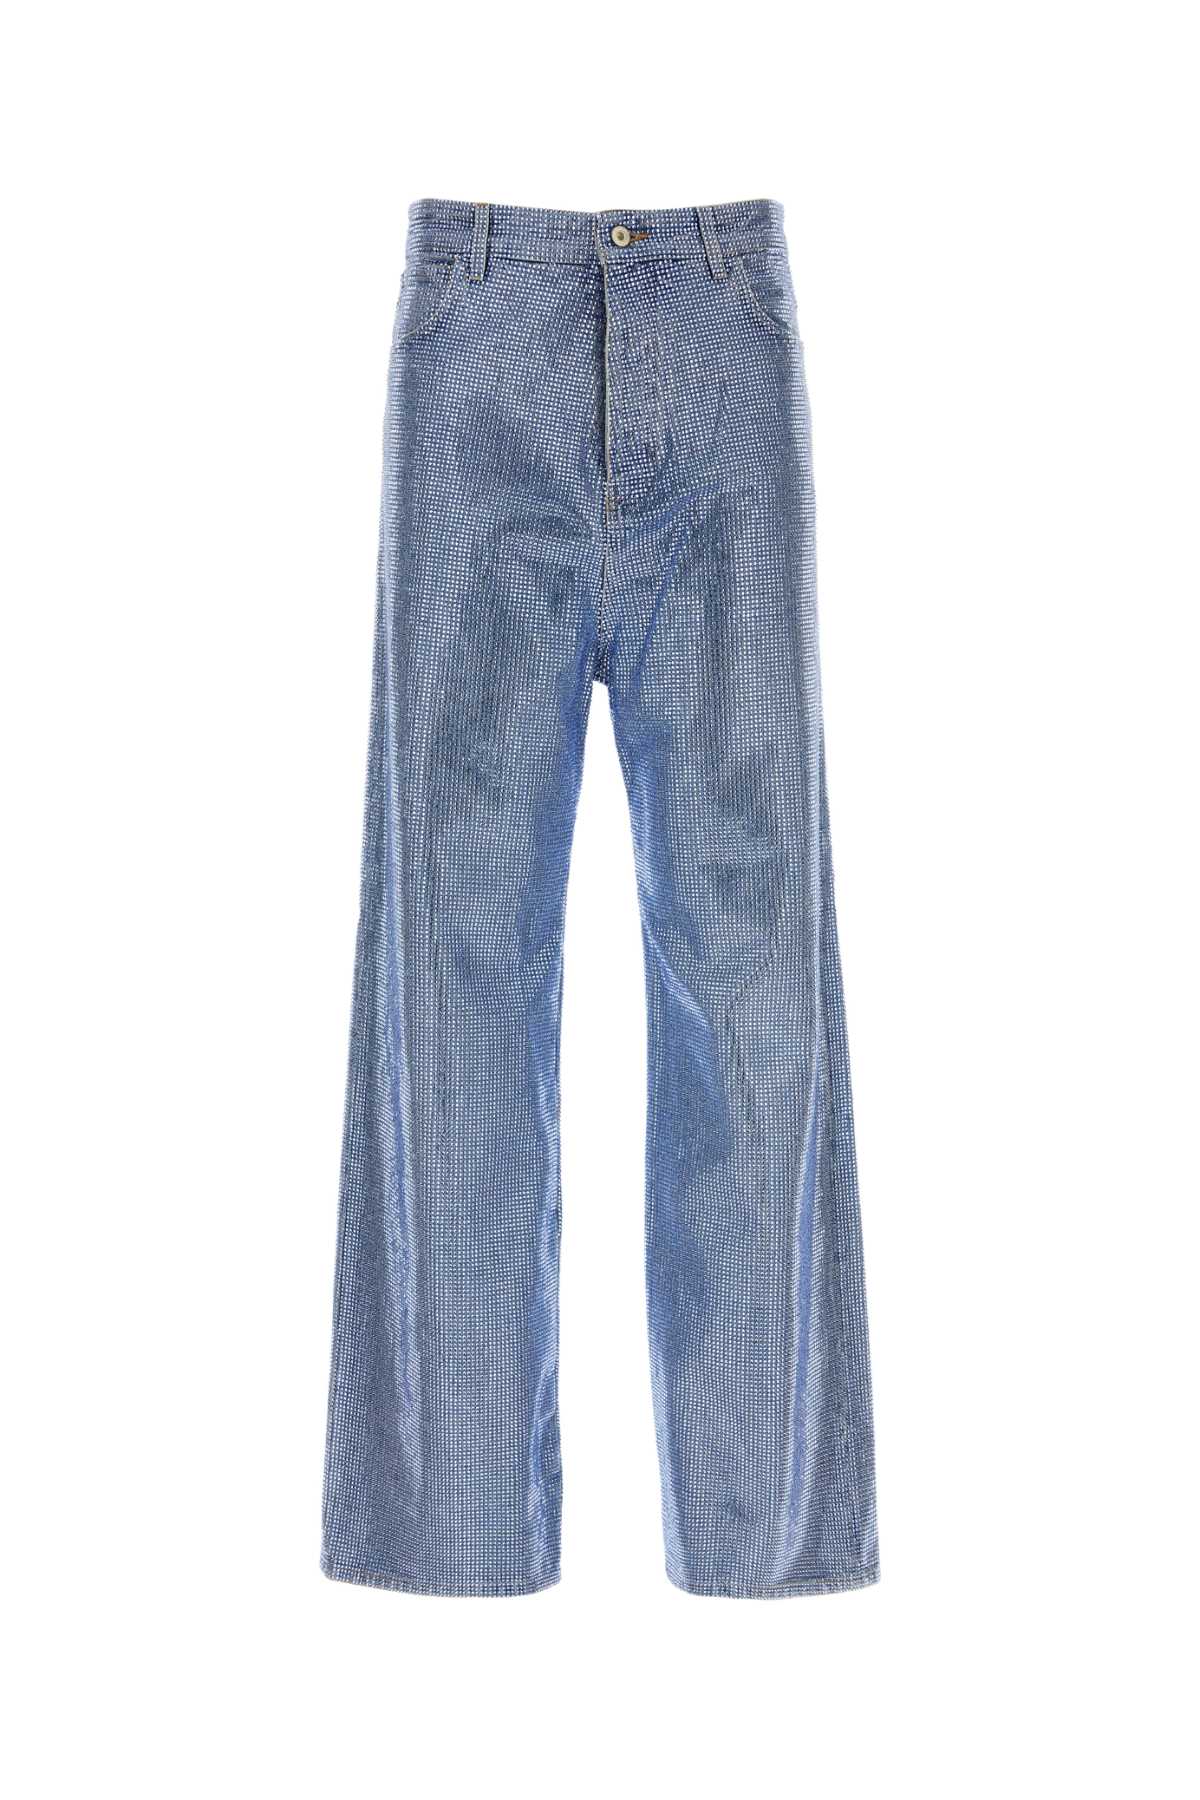 Shop Loewe Embellished Denim Jeans In Washeddenim